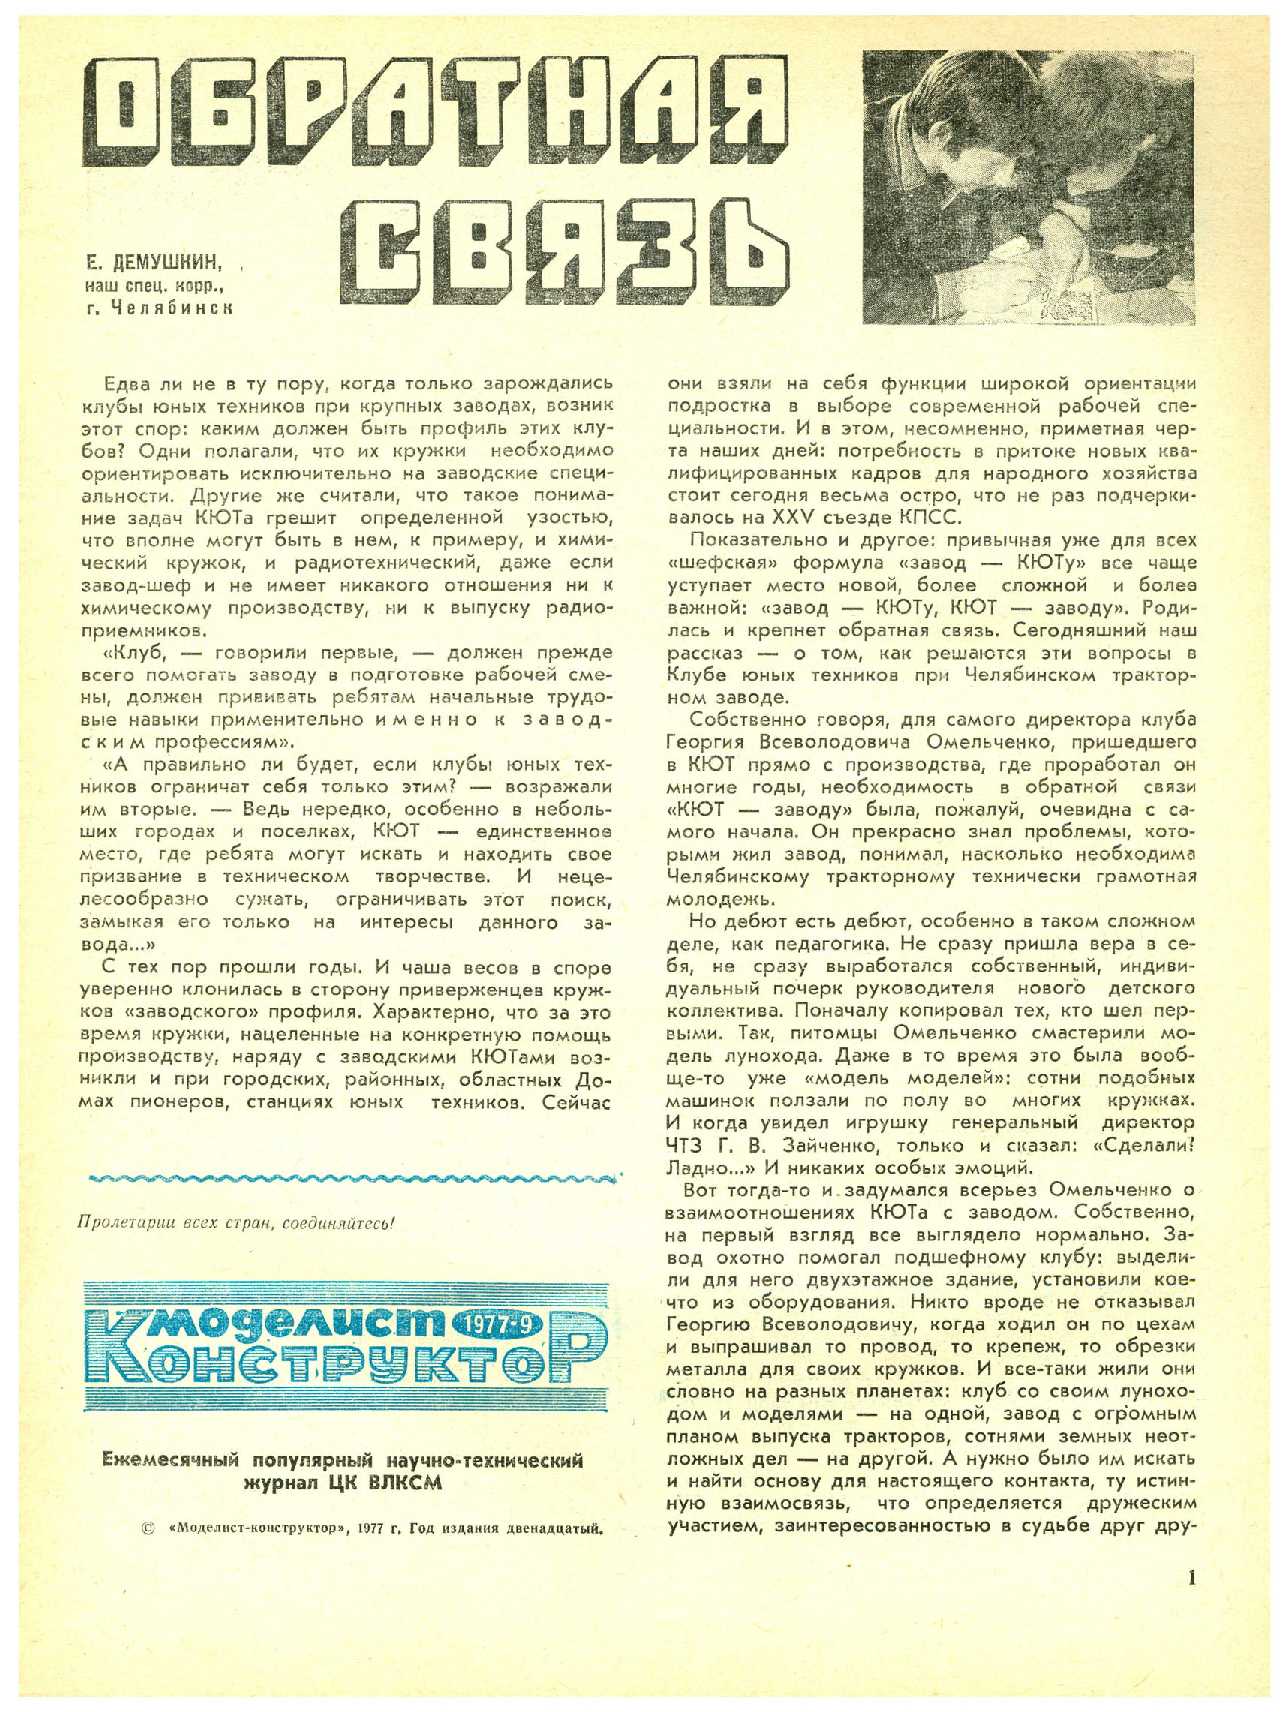 МК 9, 1977, 1 c.